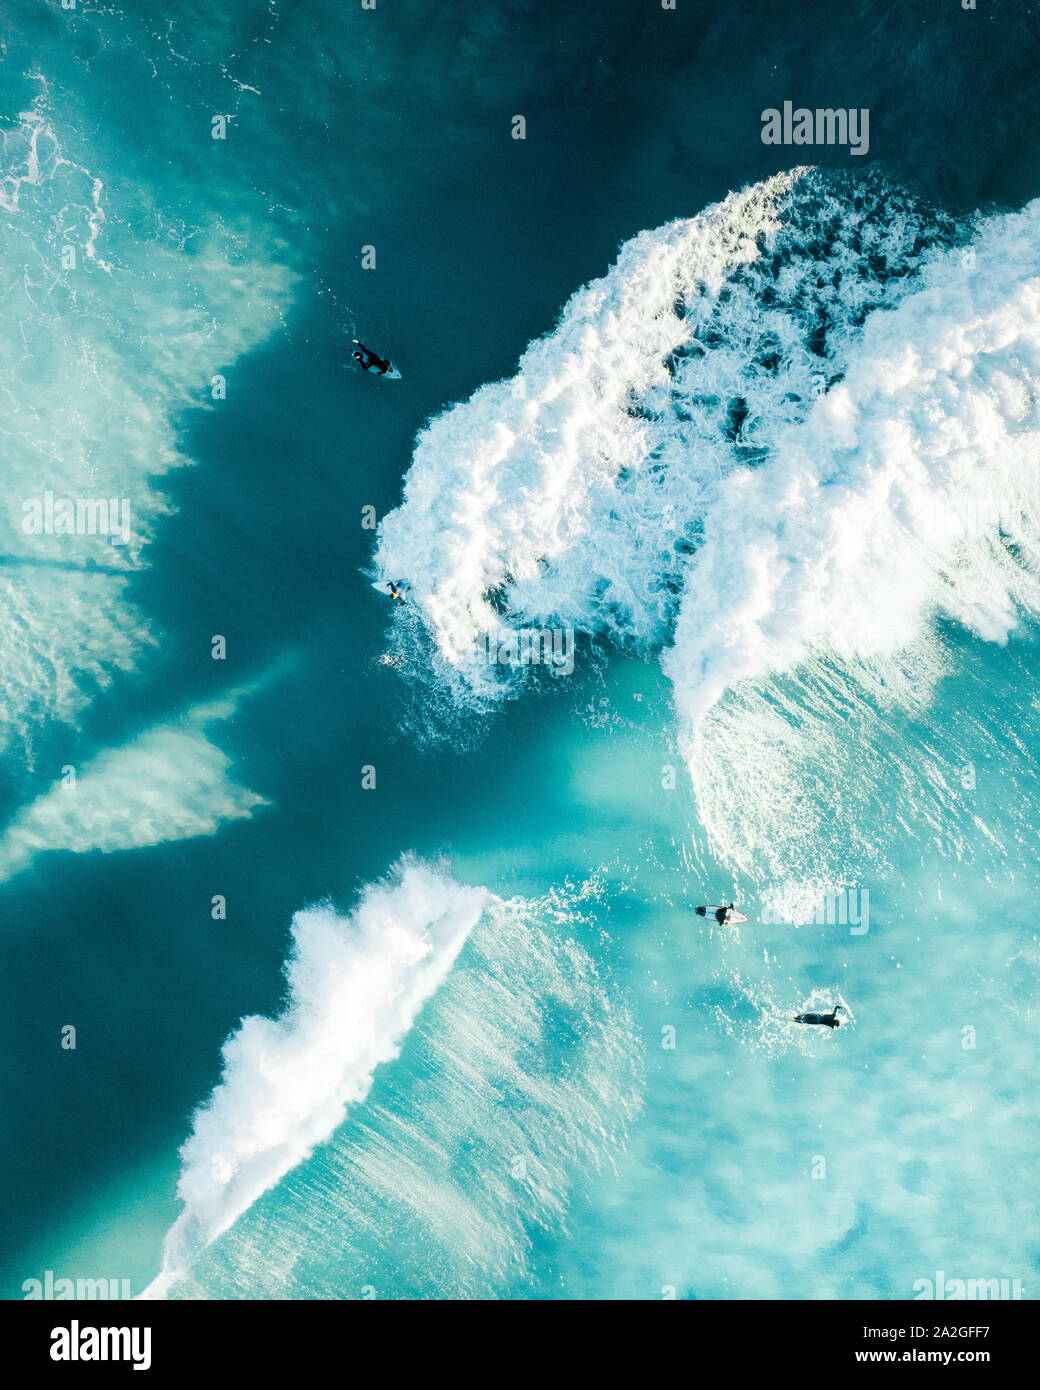 Surfers godendo massicce ondate di sunrise nell'oceano. Condizioni di belle e spot per la mattinata una gara di surf per mantenere sani e in forma Foto Stock